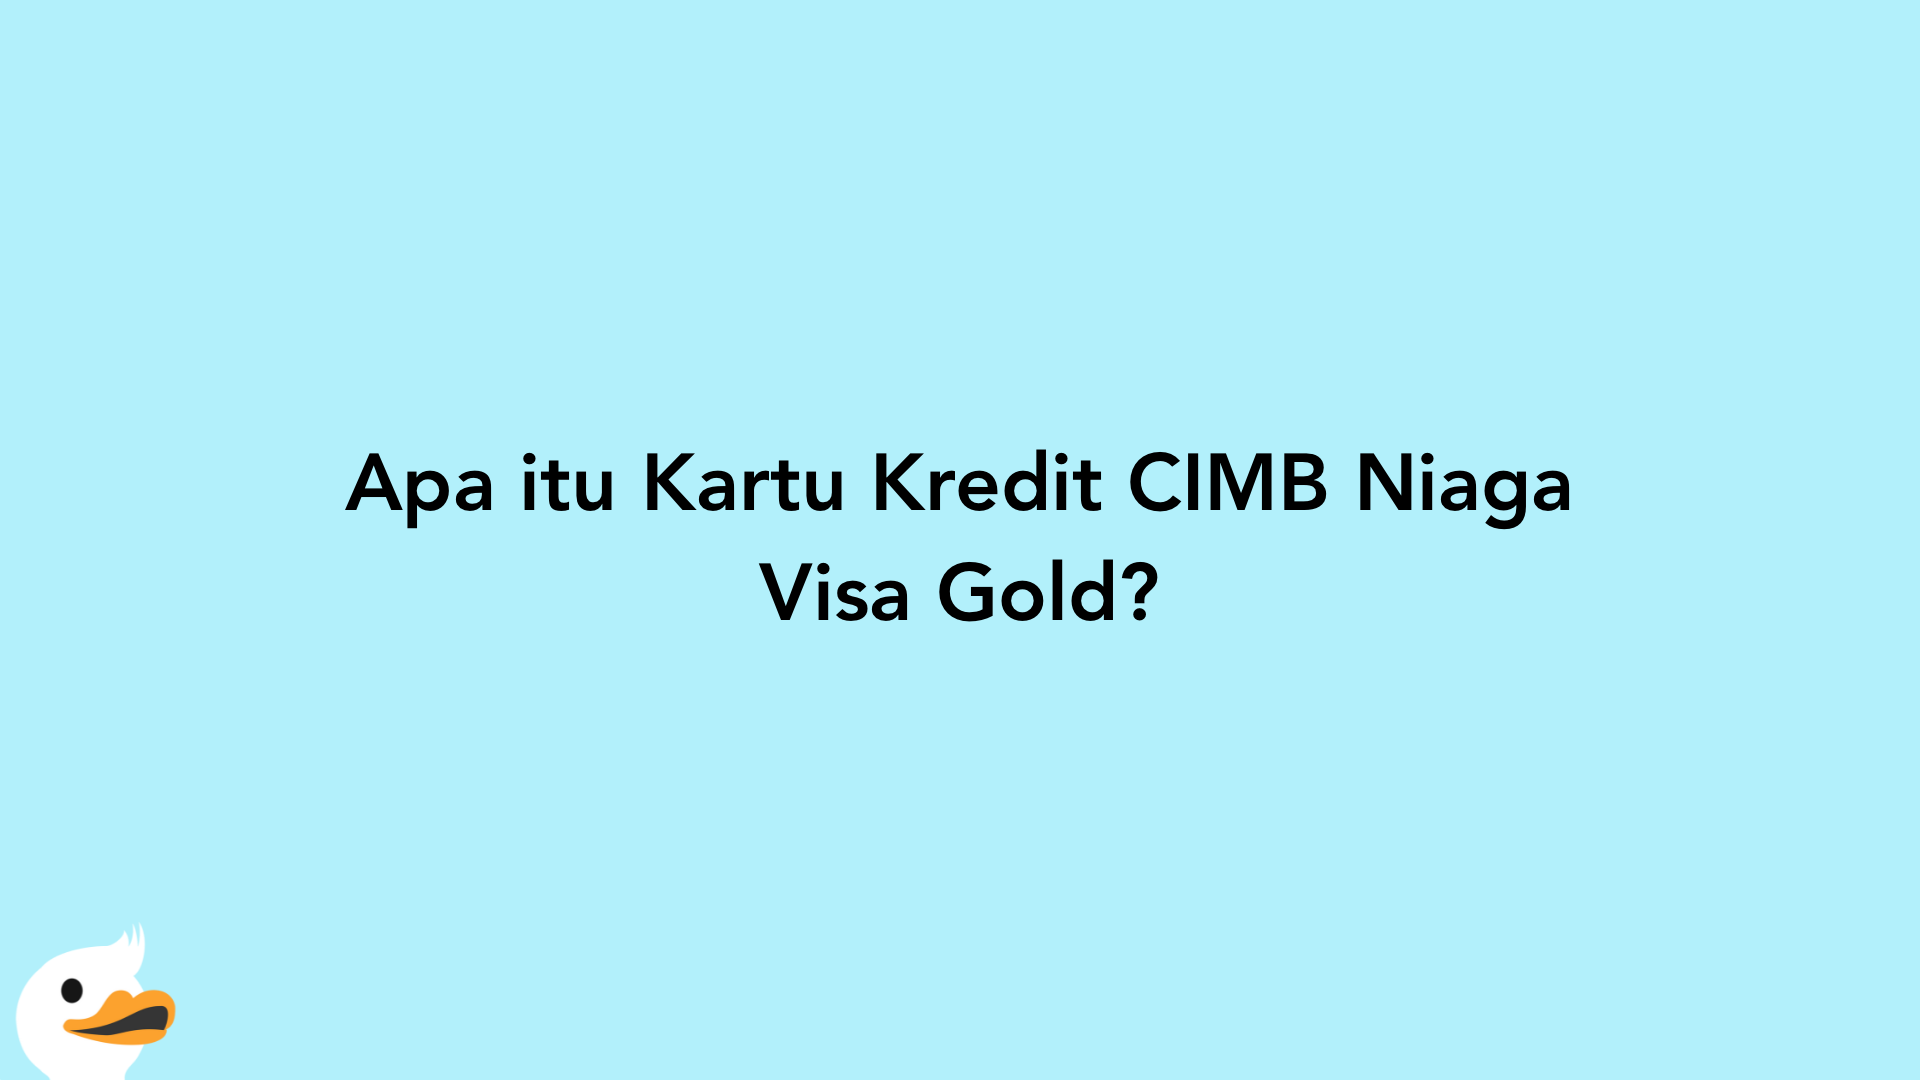 Apa itu Kartu Kredit CIMB Niaga Visa Gold?